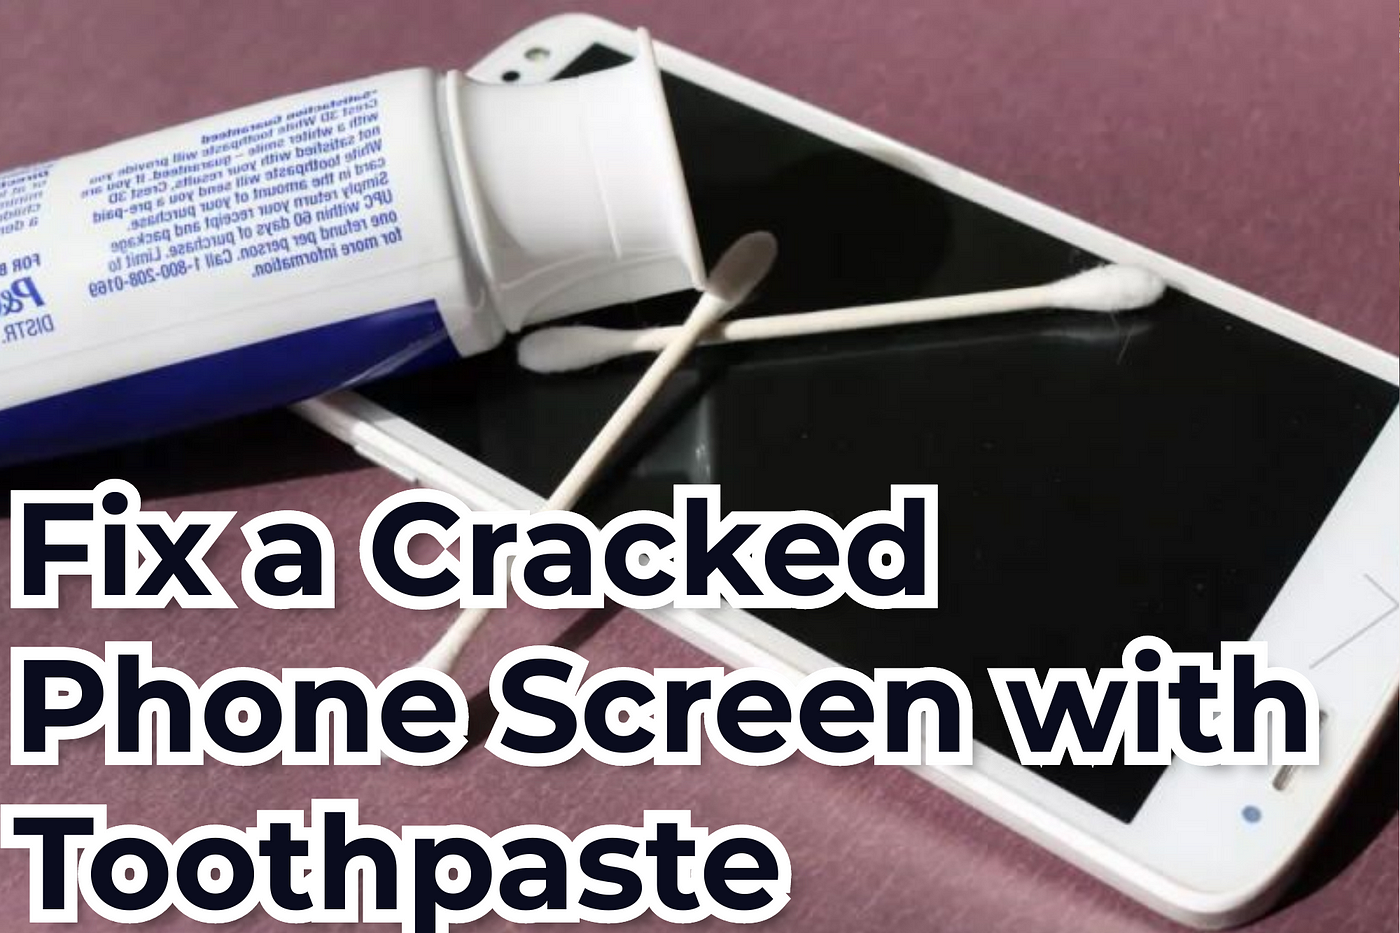 for phone screen scratch repair refurbish